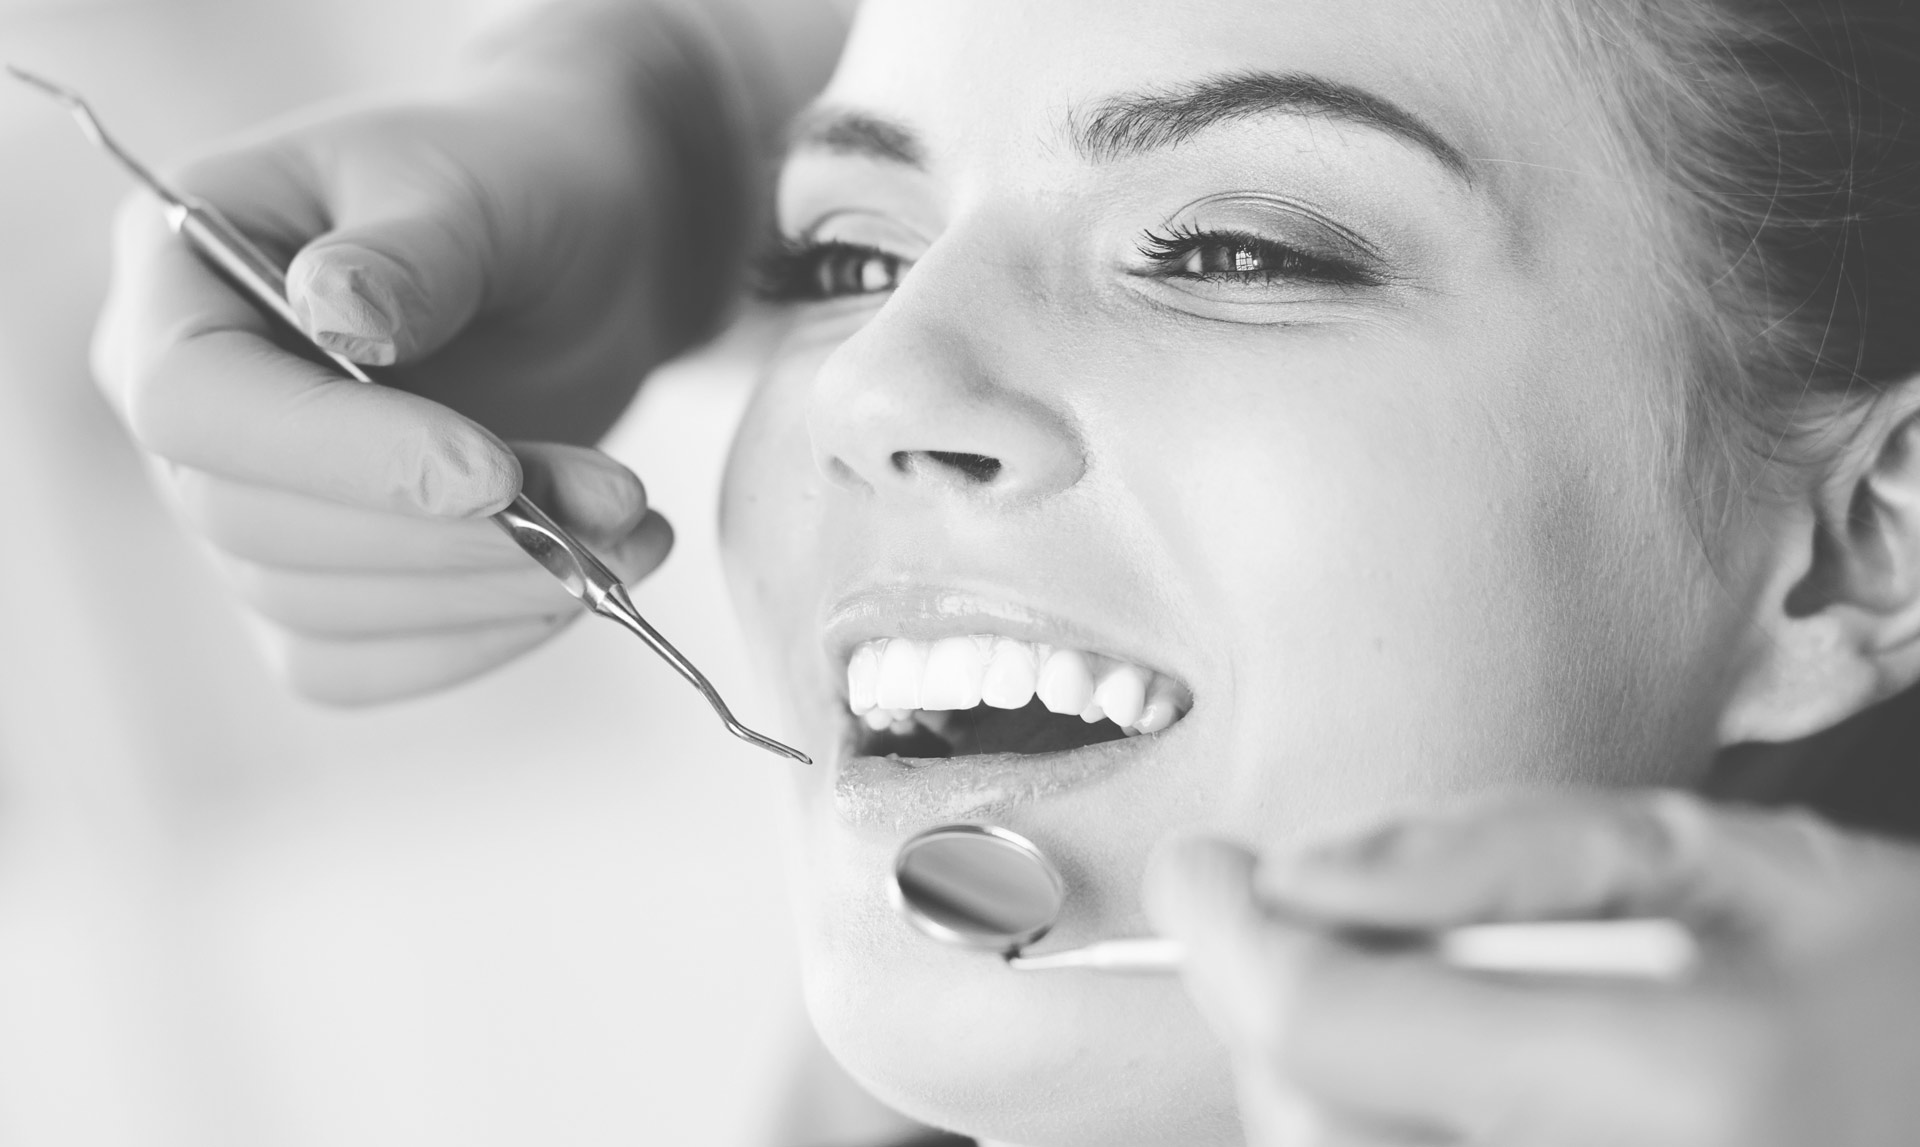 Untersuchung der Zähne und der Mundhöhle